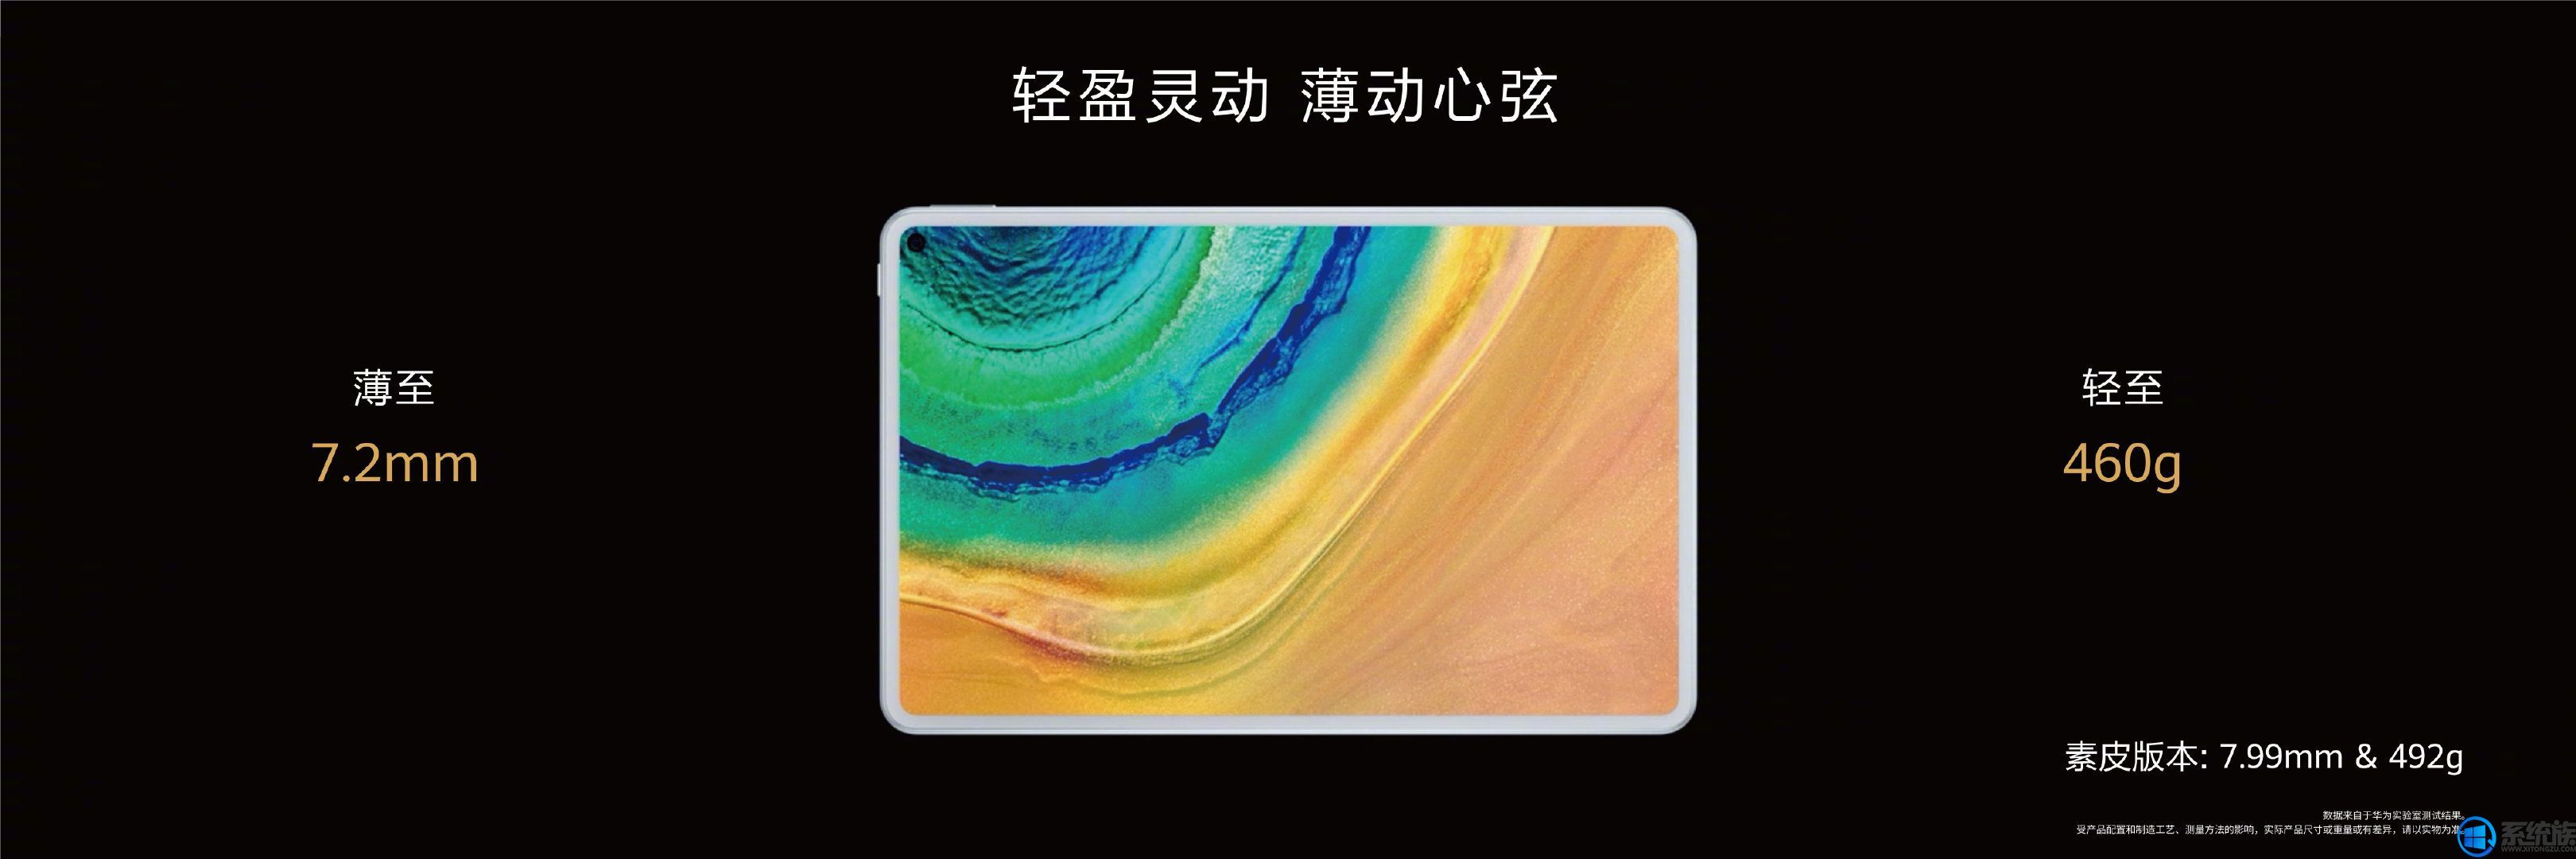 昨晚华为发布会推出全新平板MatePad Pro 5G